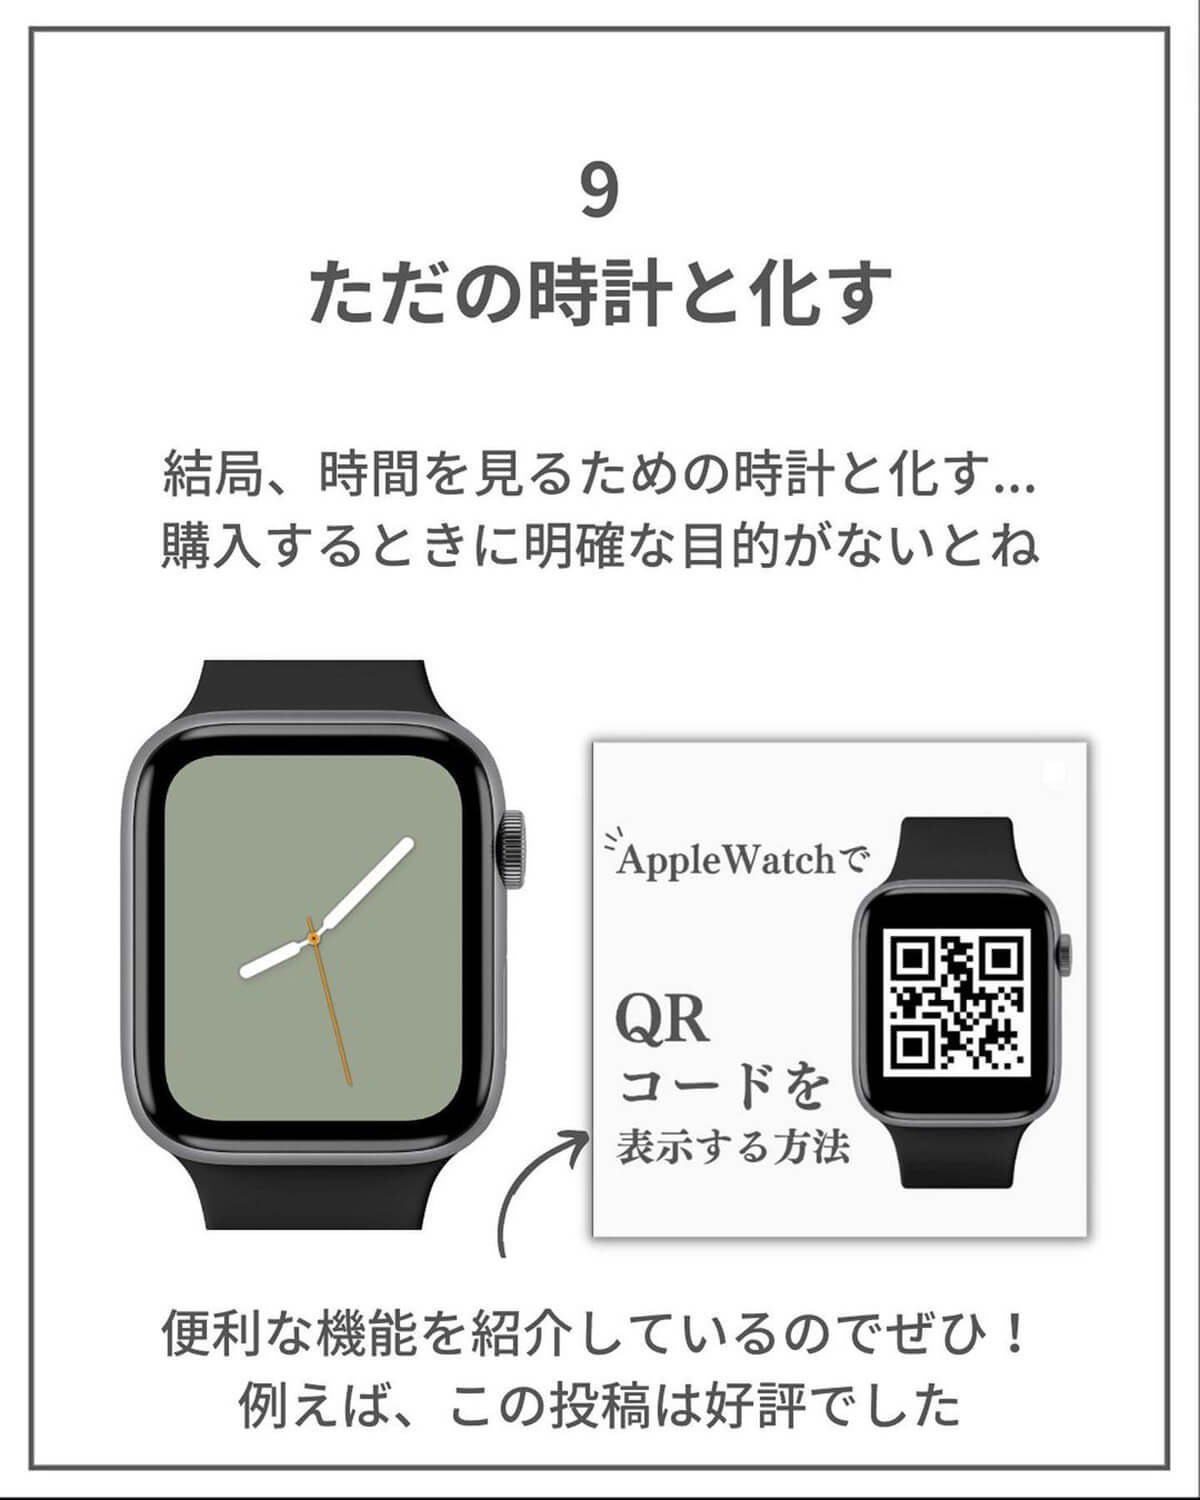 Apple Watchあるある9